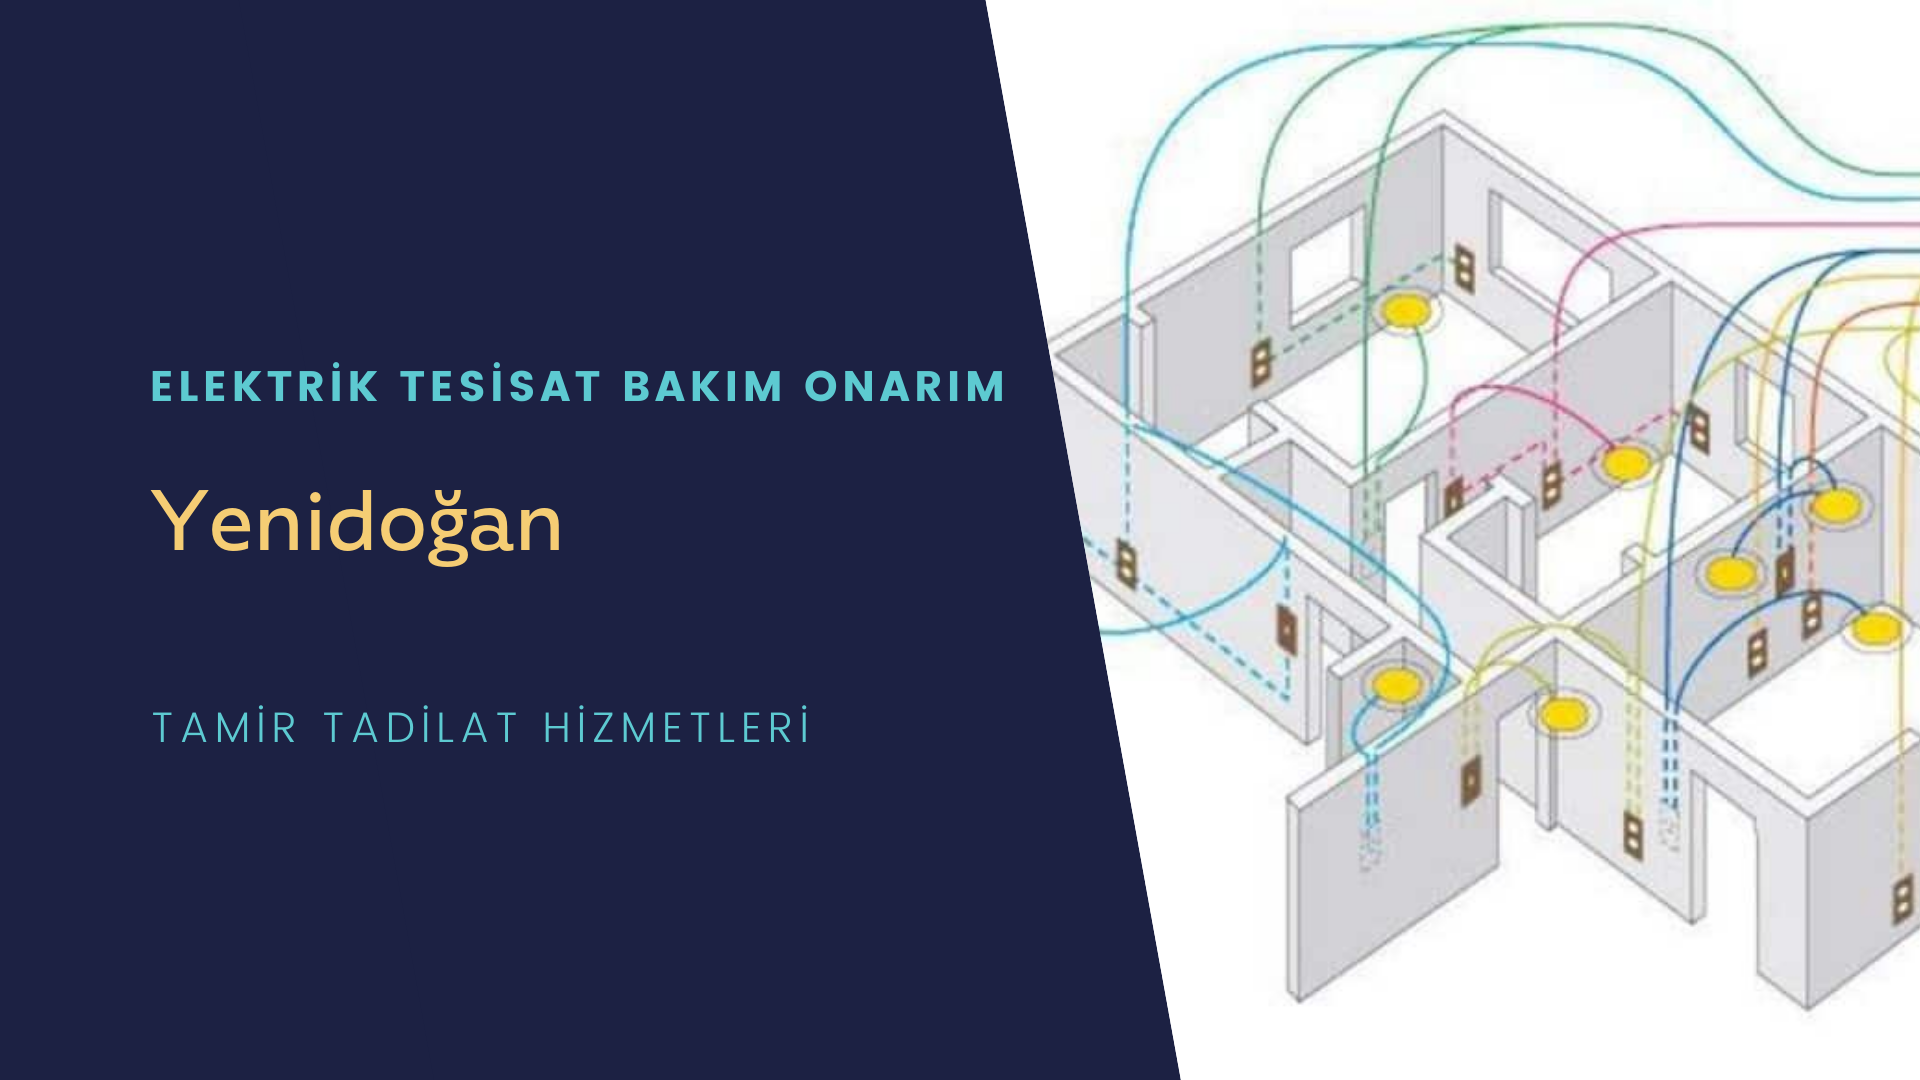 Yenidoğan'da elektrik tesisatı ustalarımı arıyorsunuz doğru adrestenizi Yenidoğan elektrik tesisatı ustalarımız 7/24 sizlere hizmet vermekten mutluluk duyar.